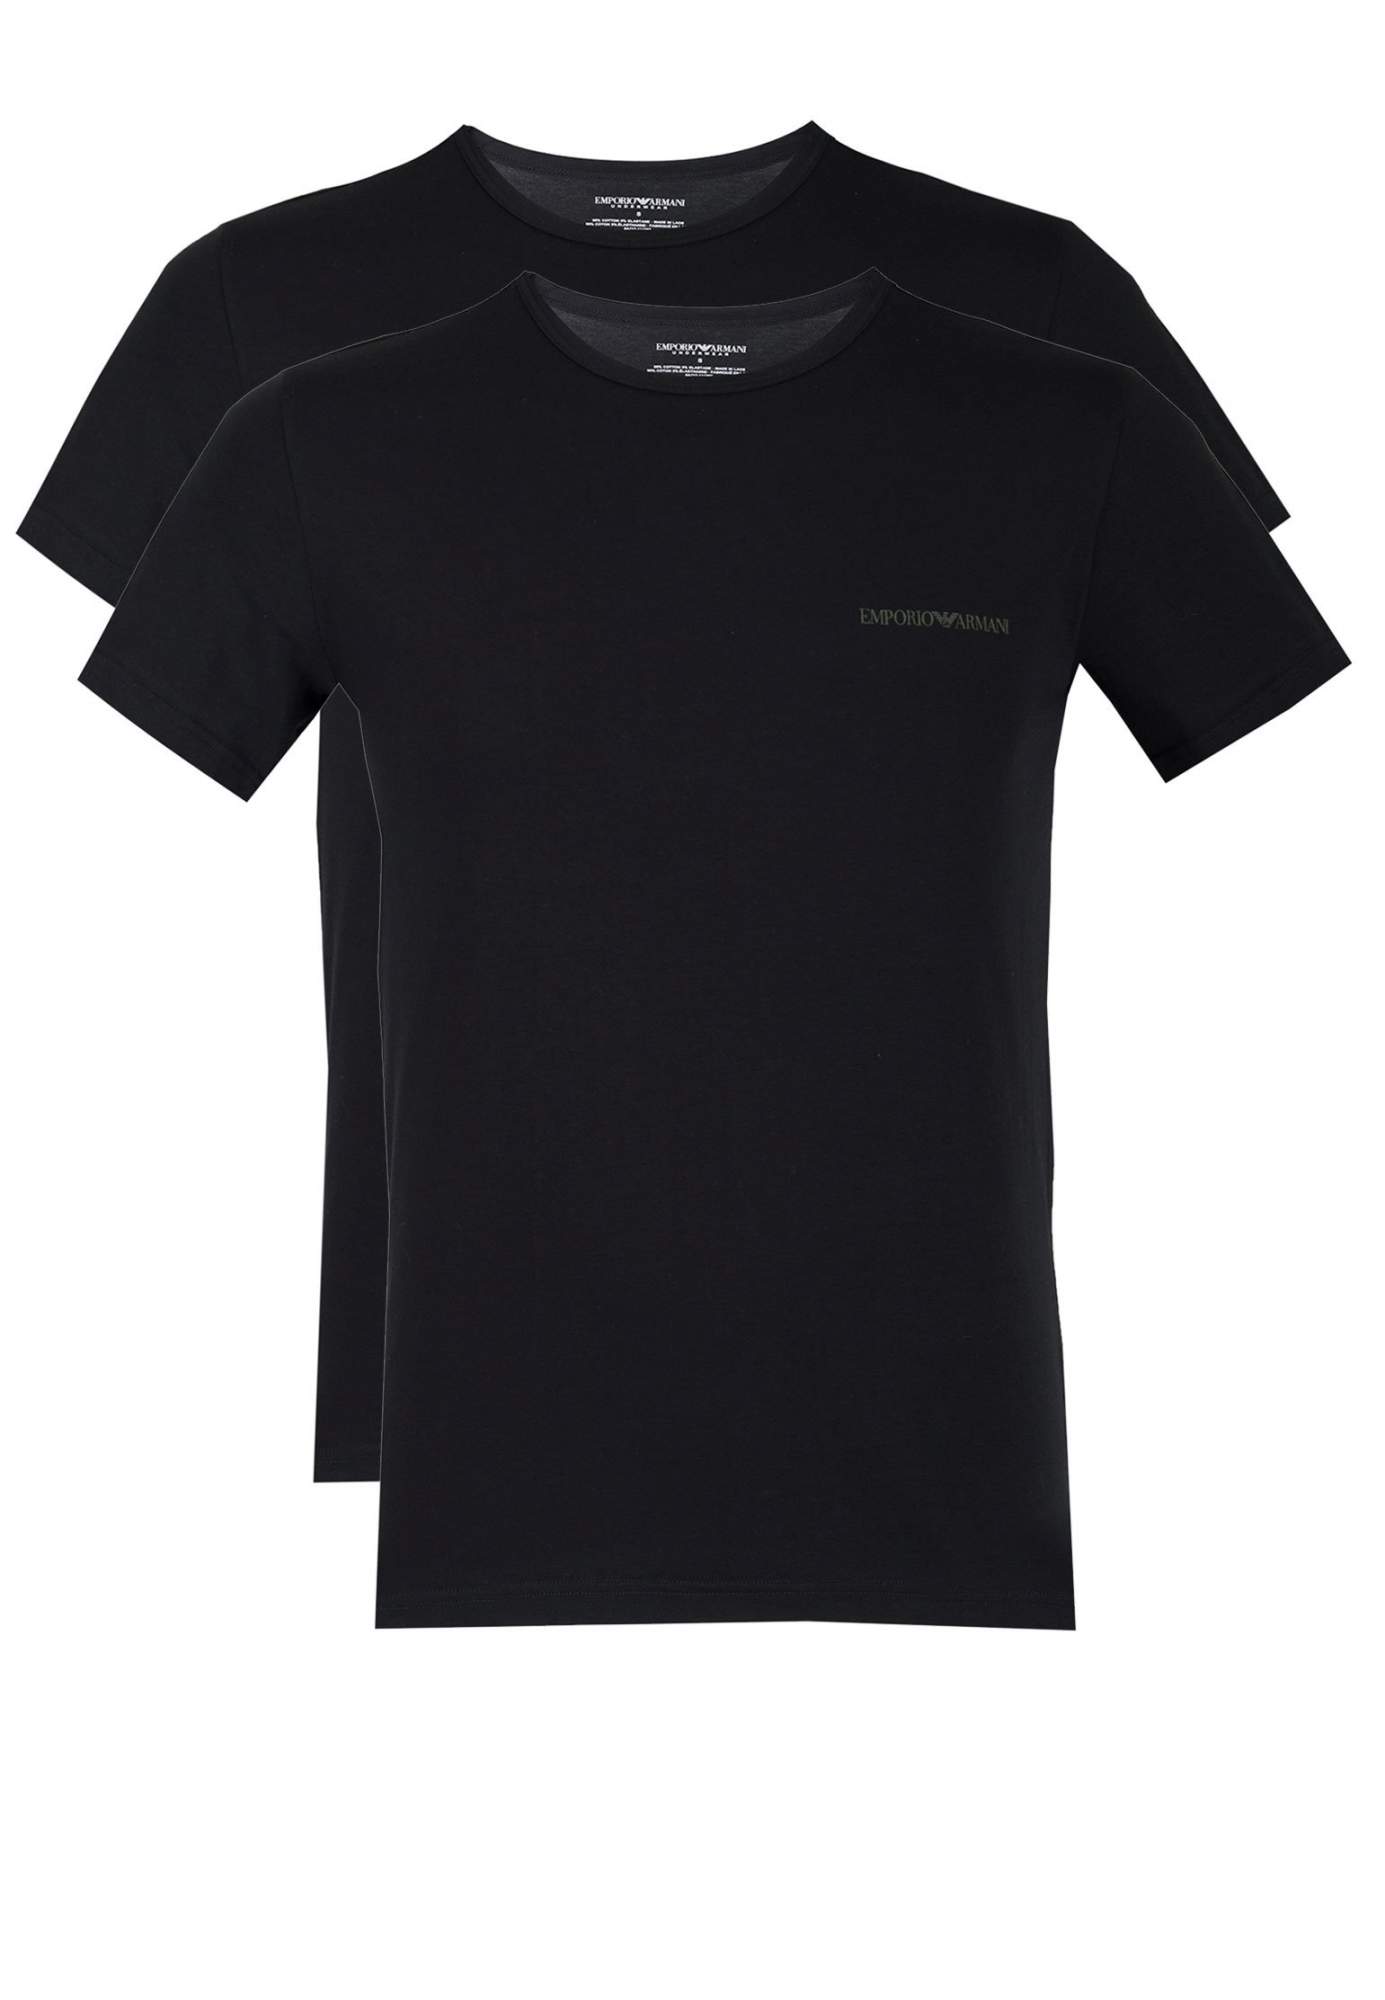 Комплект футболок мужских Emporio Armani 121465 черных 2XL